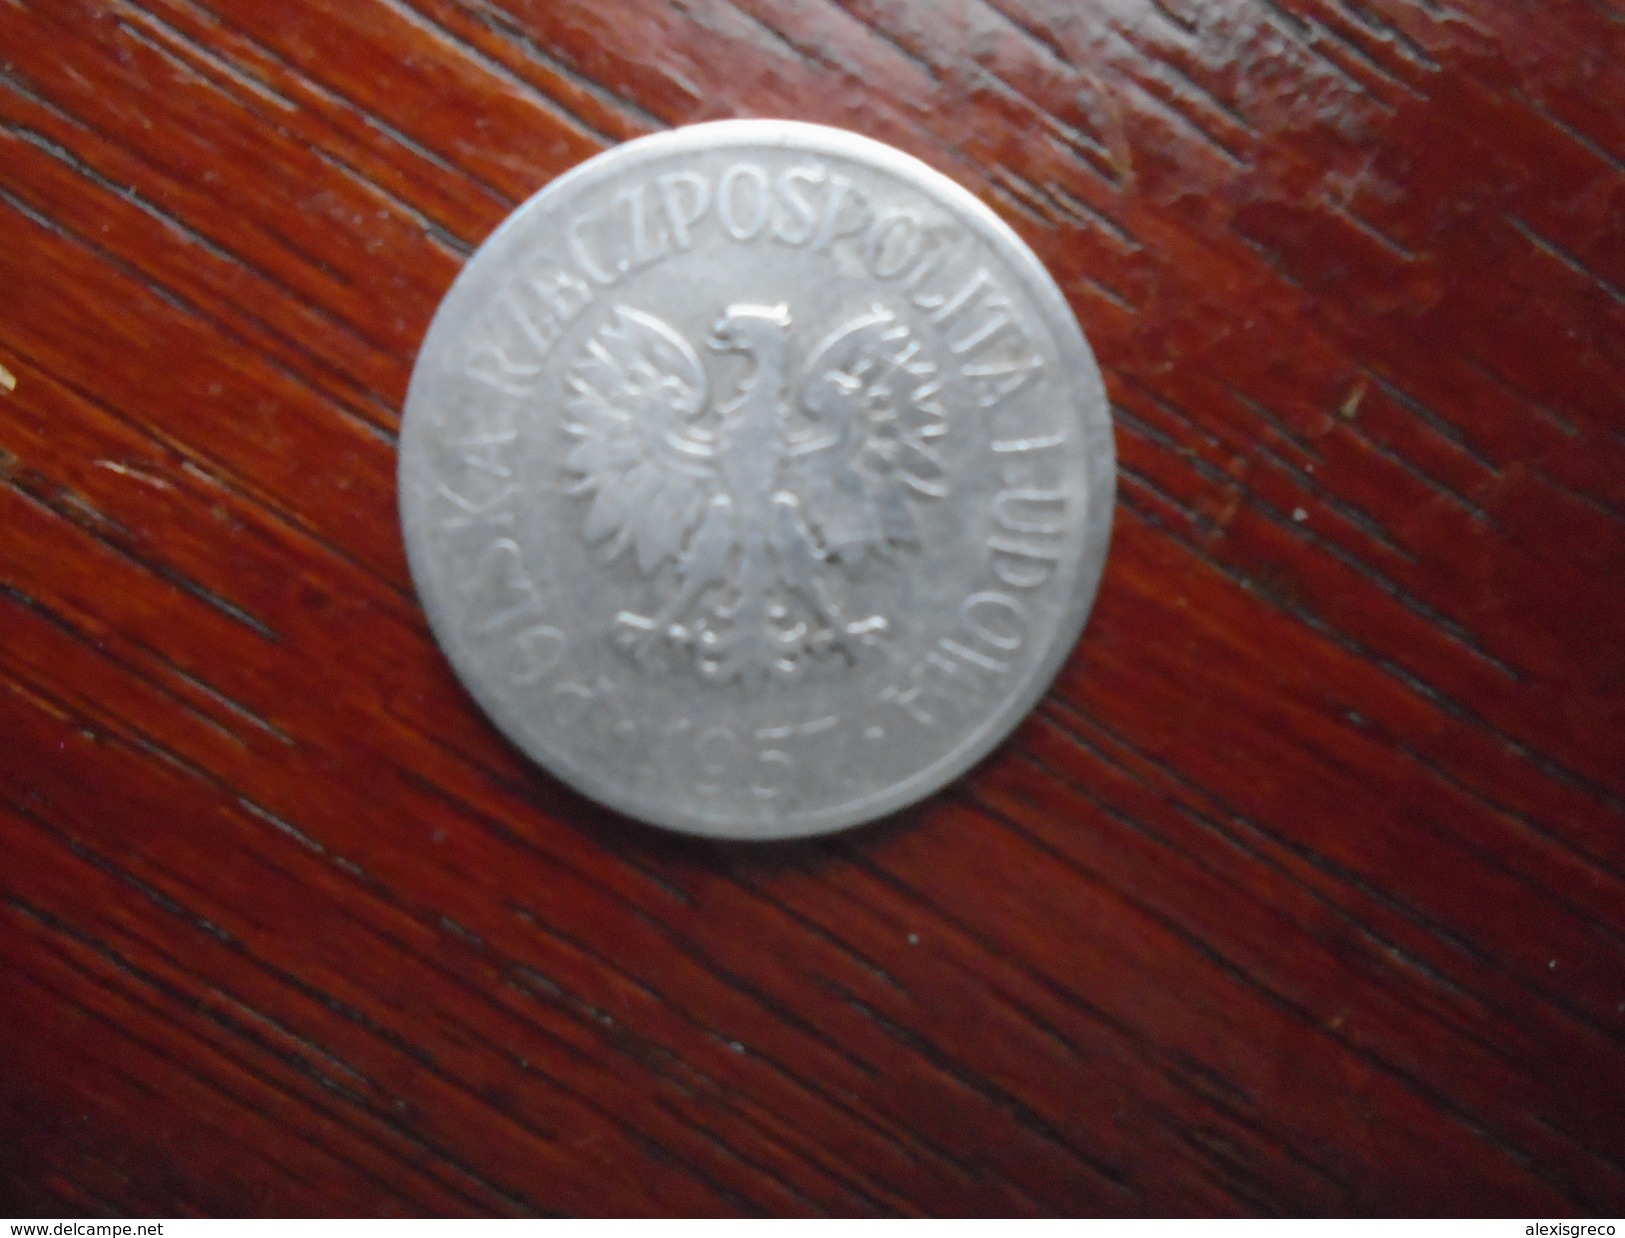 POLAND 1957  FIFTY  GROSZY Aluminium USED COIN In FAIR CONDITION. - Poland